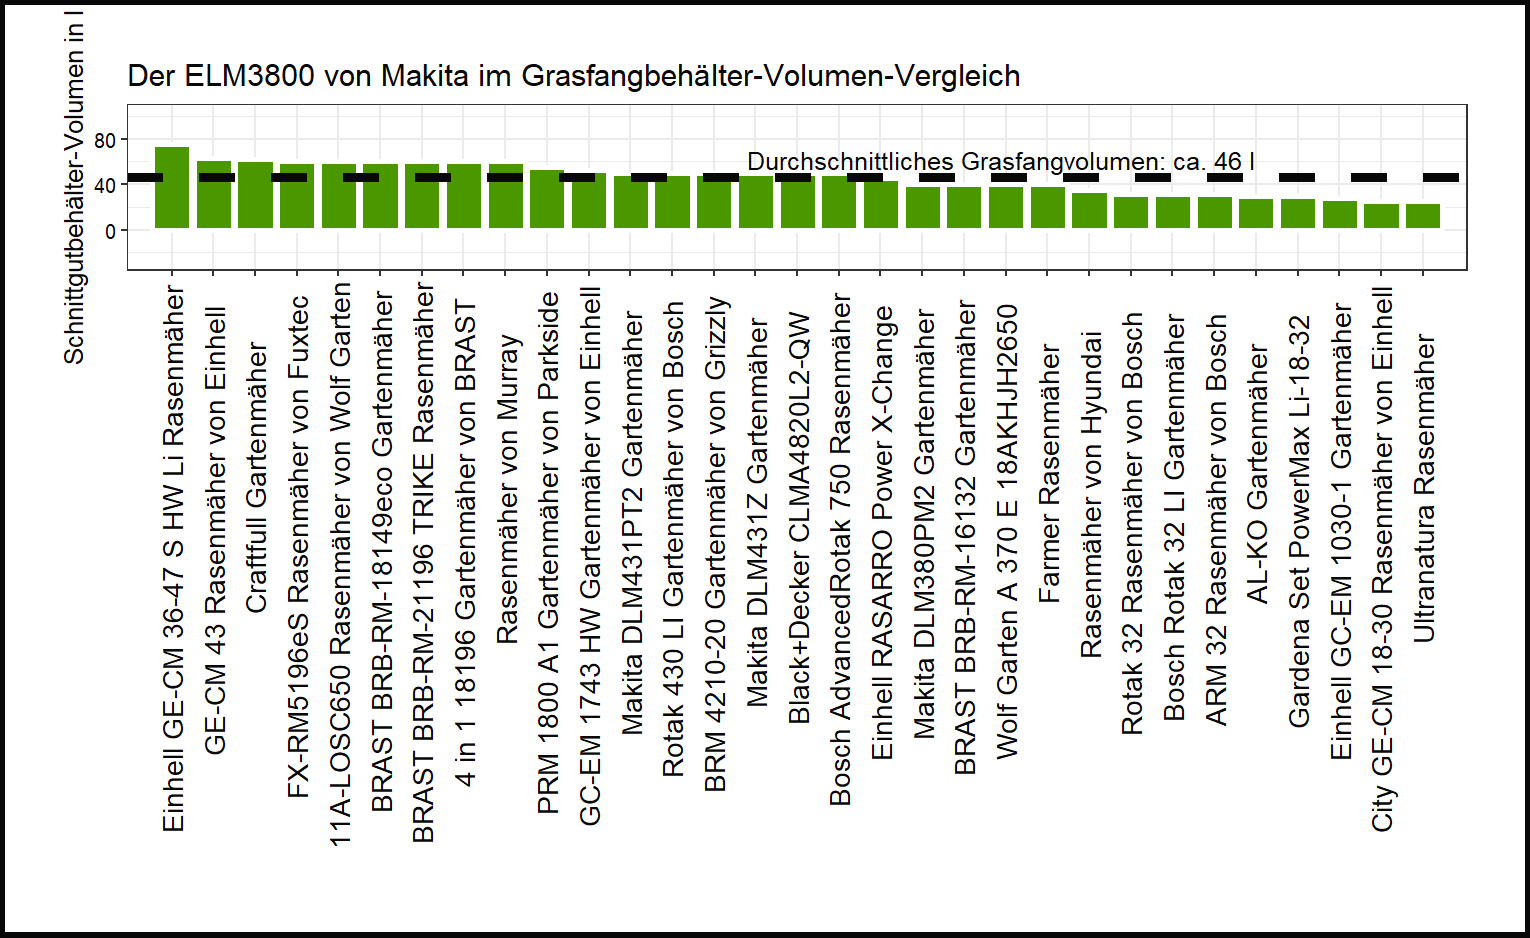 Grasfangsack-Volumen-Vergleich von dem Makita Rasenmäher ELM3800